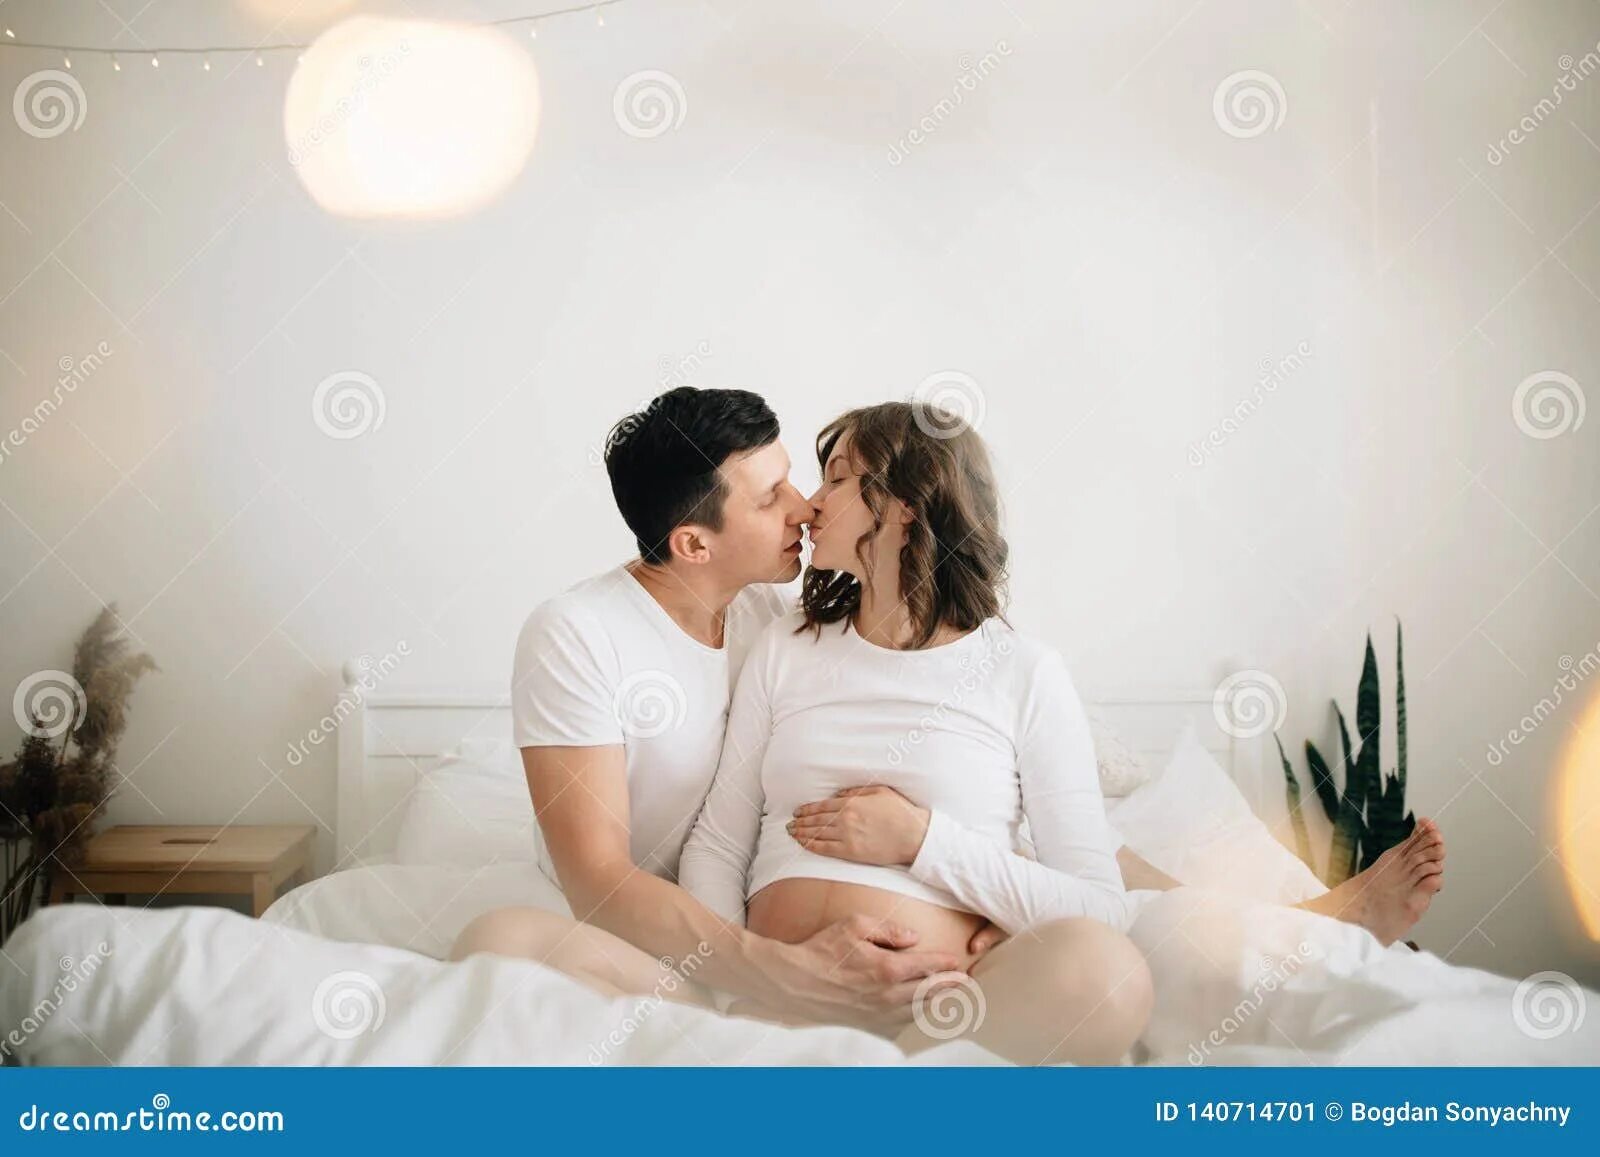 Фотосессия пары беременность 2023. Вечер в обнимку с женой беременной. Муж обнимает беременную жену в постели. Любовь муж и жена беременна. Помогла паре забеременеть